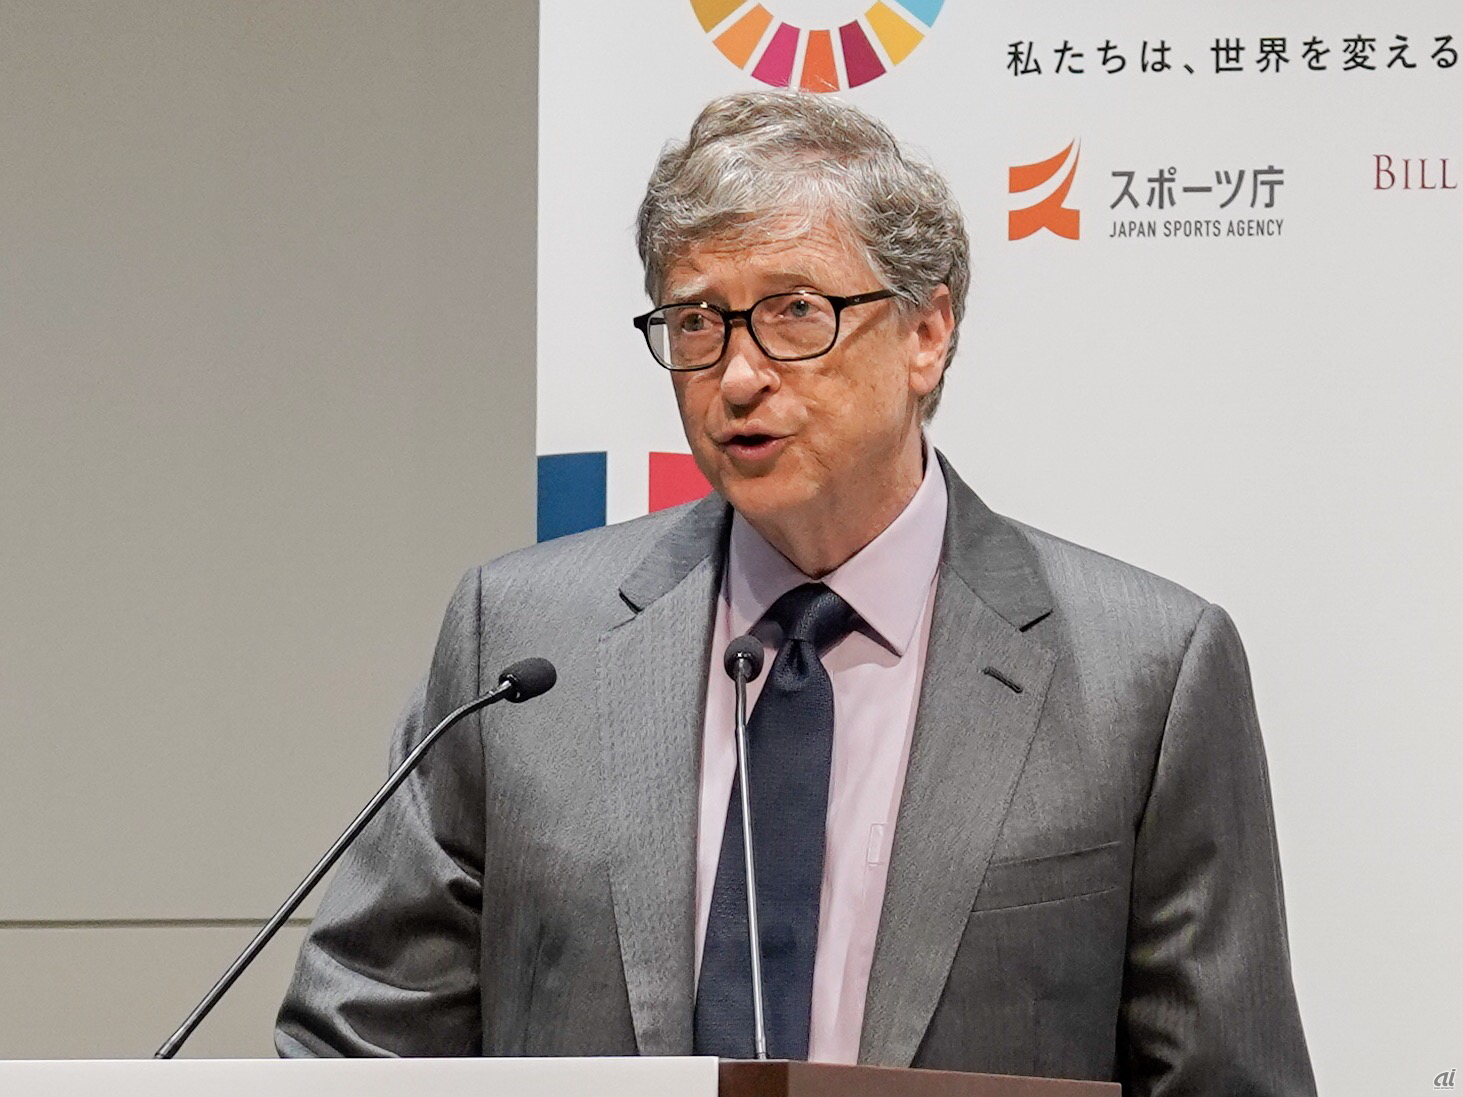 ビル ゲイツ氏の財団とスポーツ庁がパートナーシップ締結 持続可能 な東京五輪を Cnet Japan